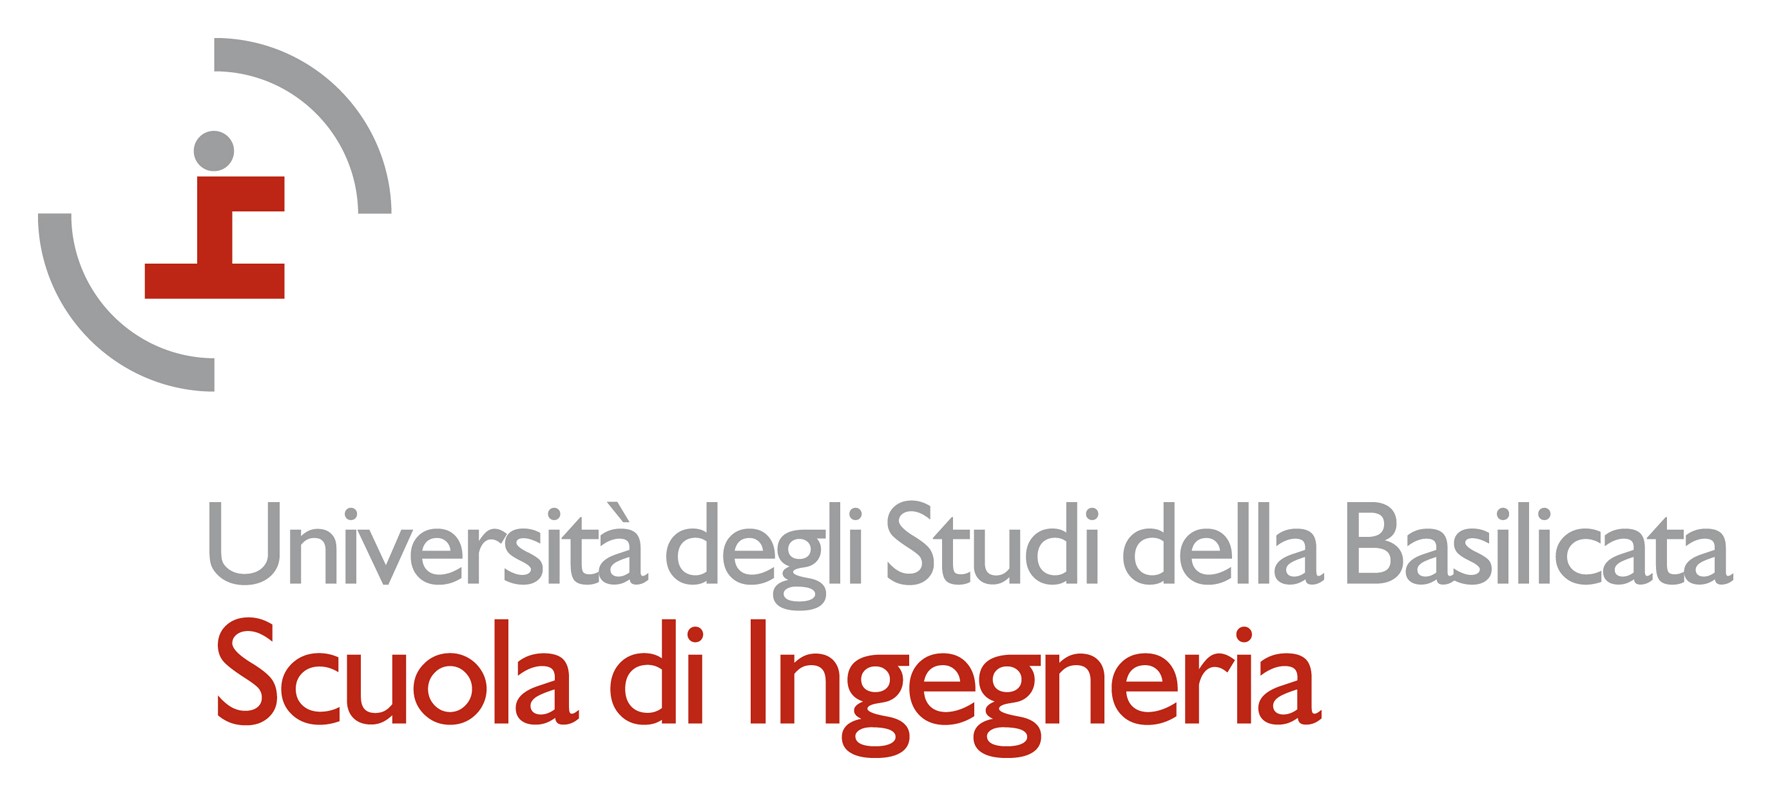 Scuola di ingegneria logo